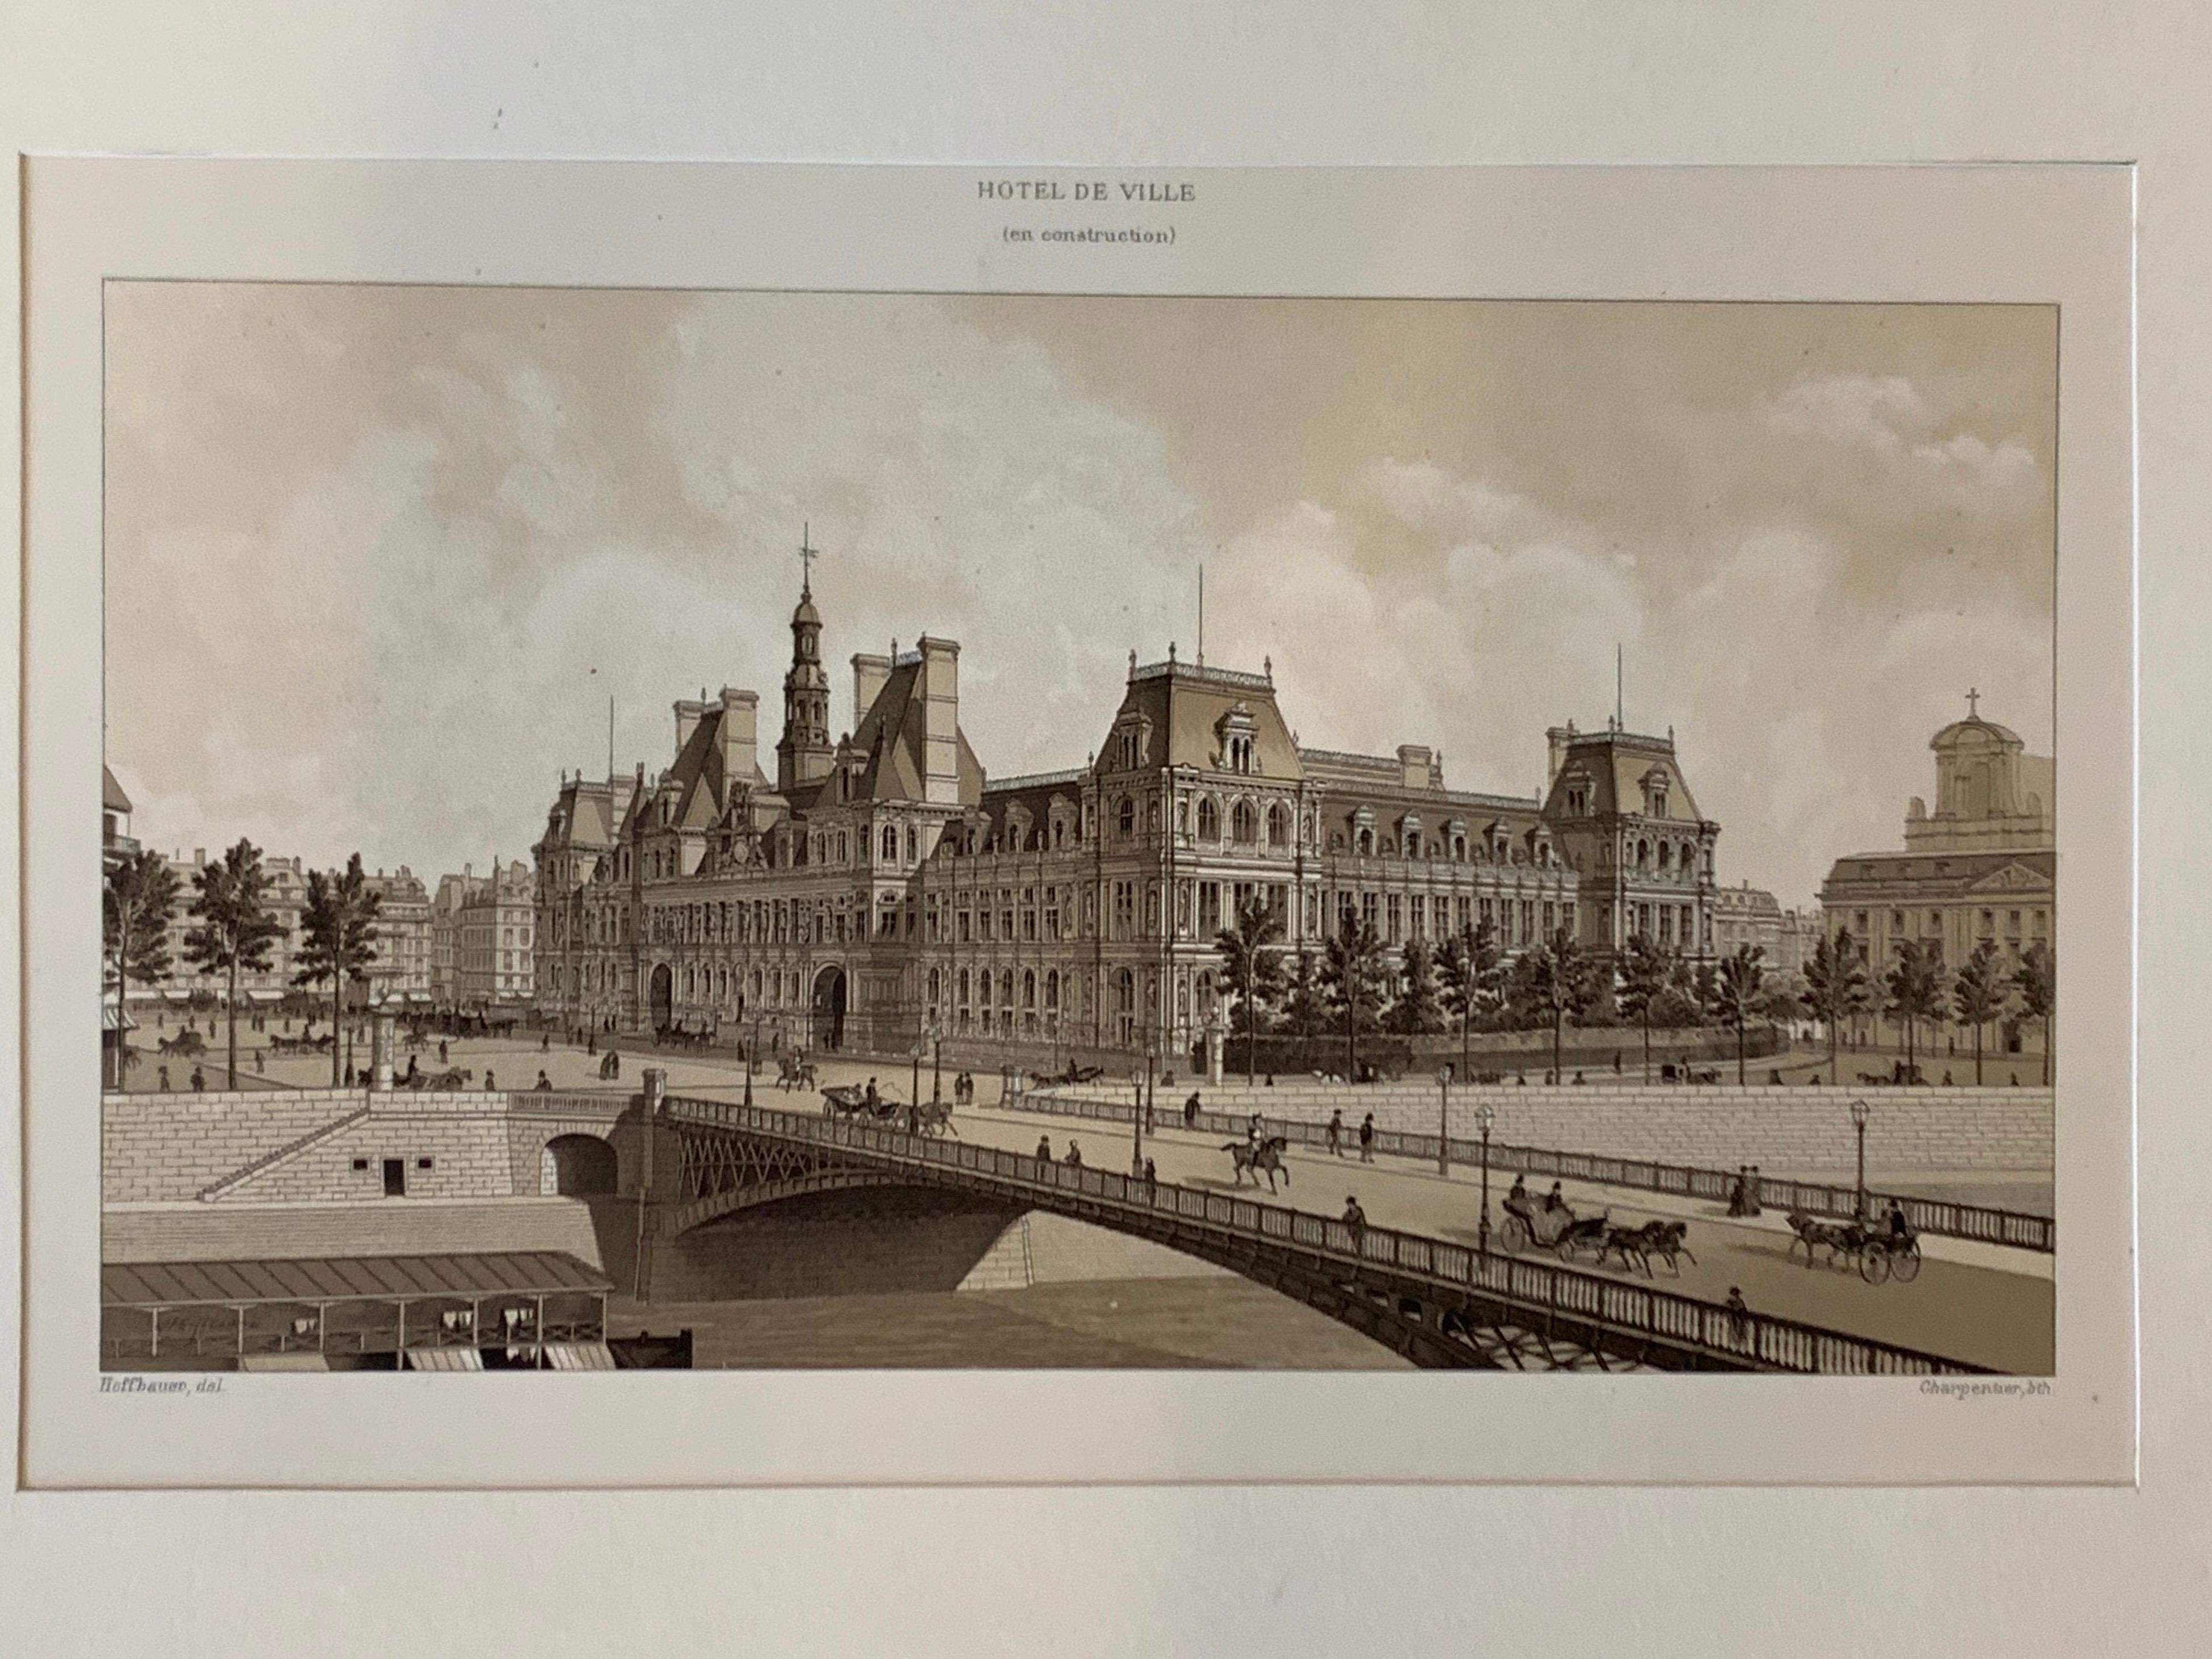 Hotel De Ville Paris en Construction Charpentier Paper Lithograph 1870s Print 1